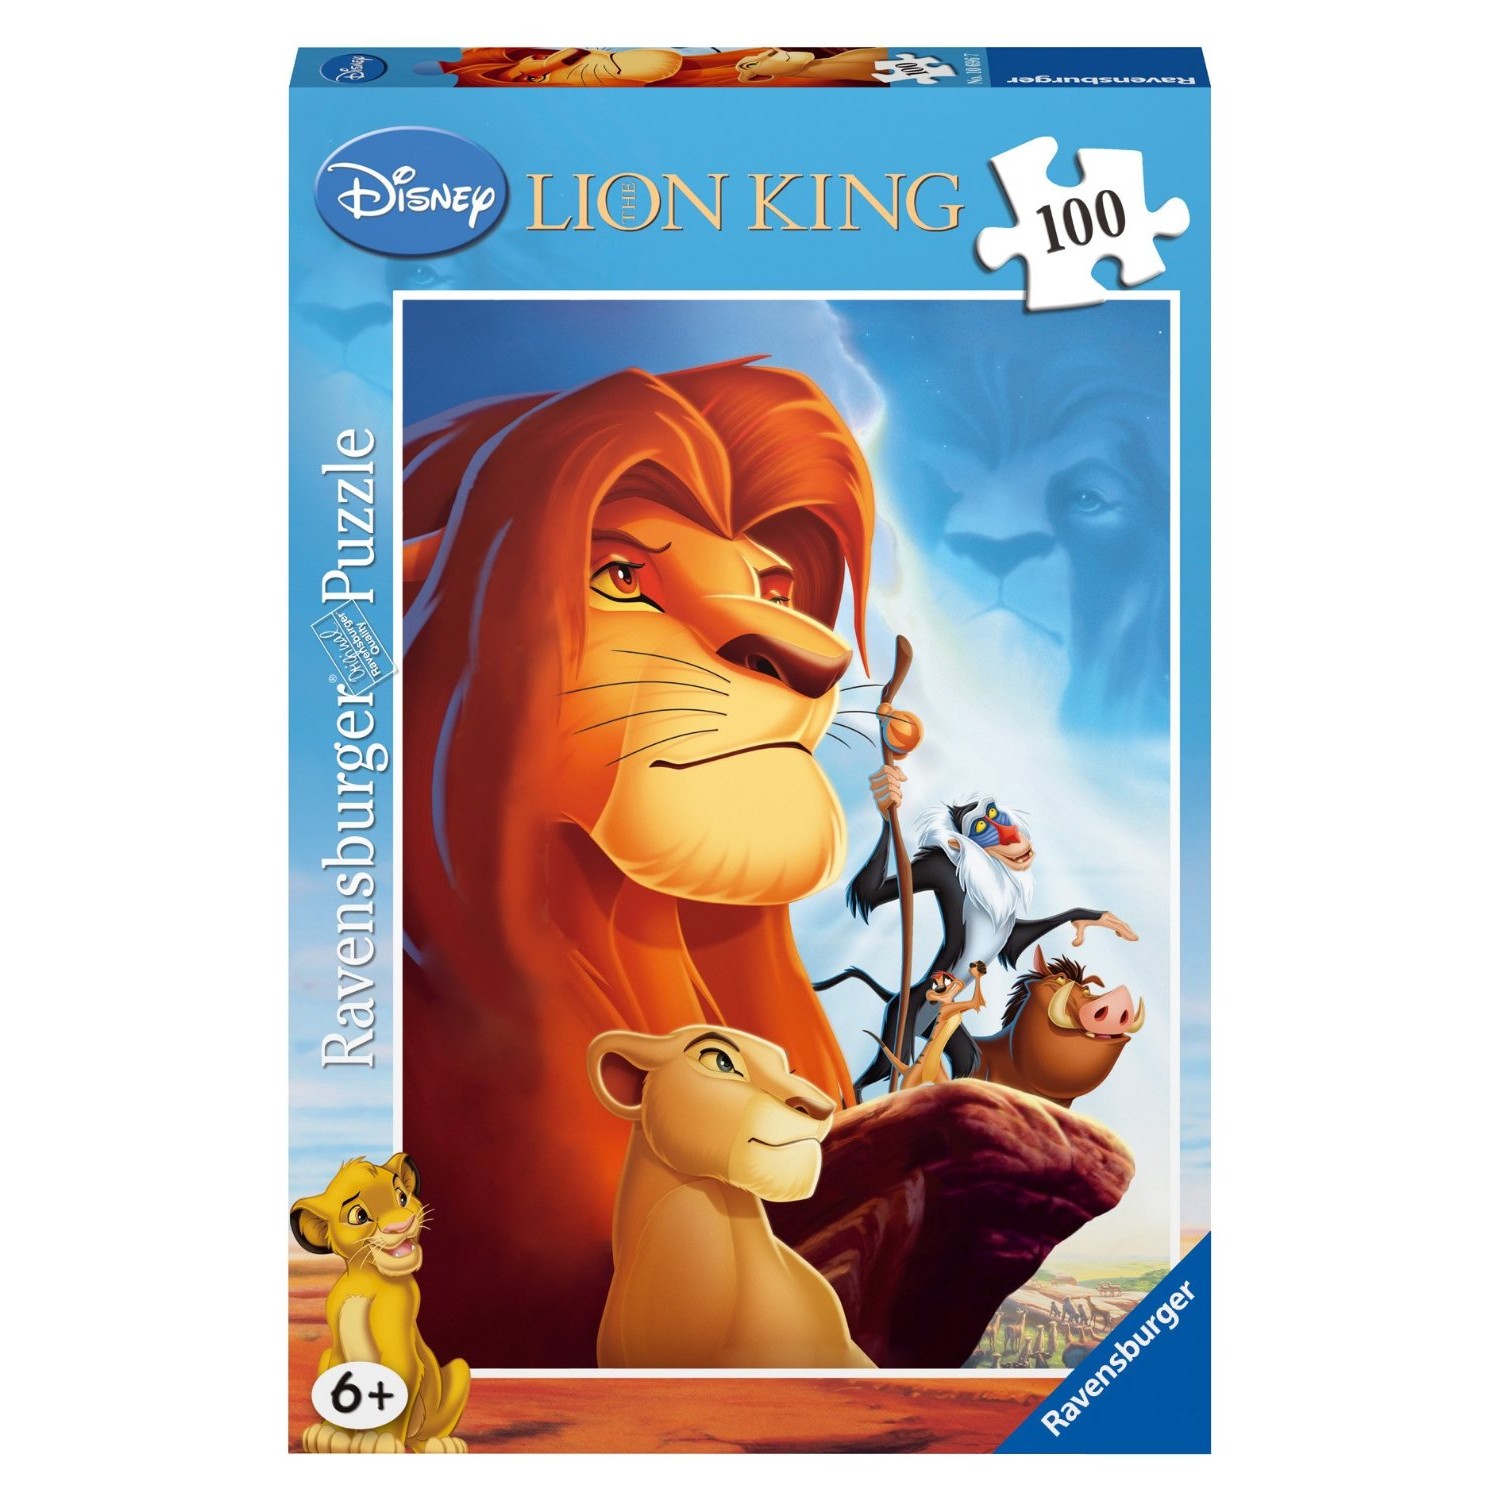 Puzzle Disney 100 ans - Le Roi Lion Simba Ravensburger-13373 300 pièces  Puzzles - Animaux sauvages